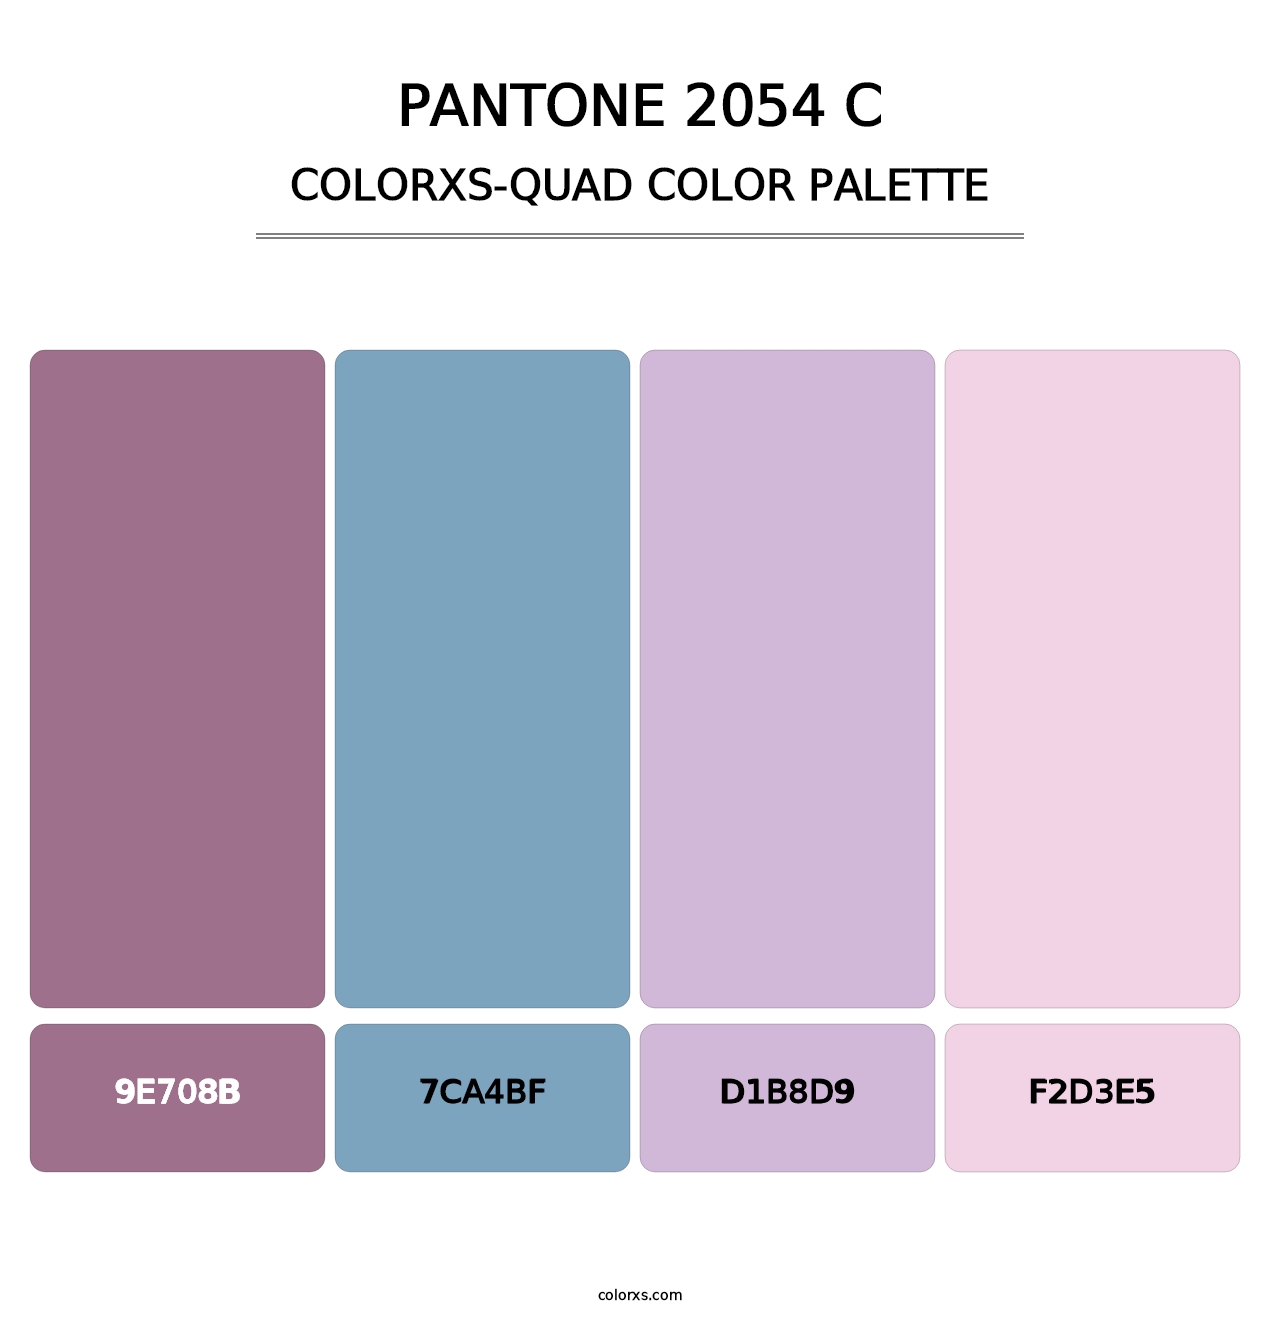 PANTONE 2054 C - Colorxs Quad Palette